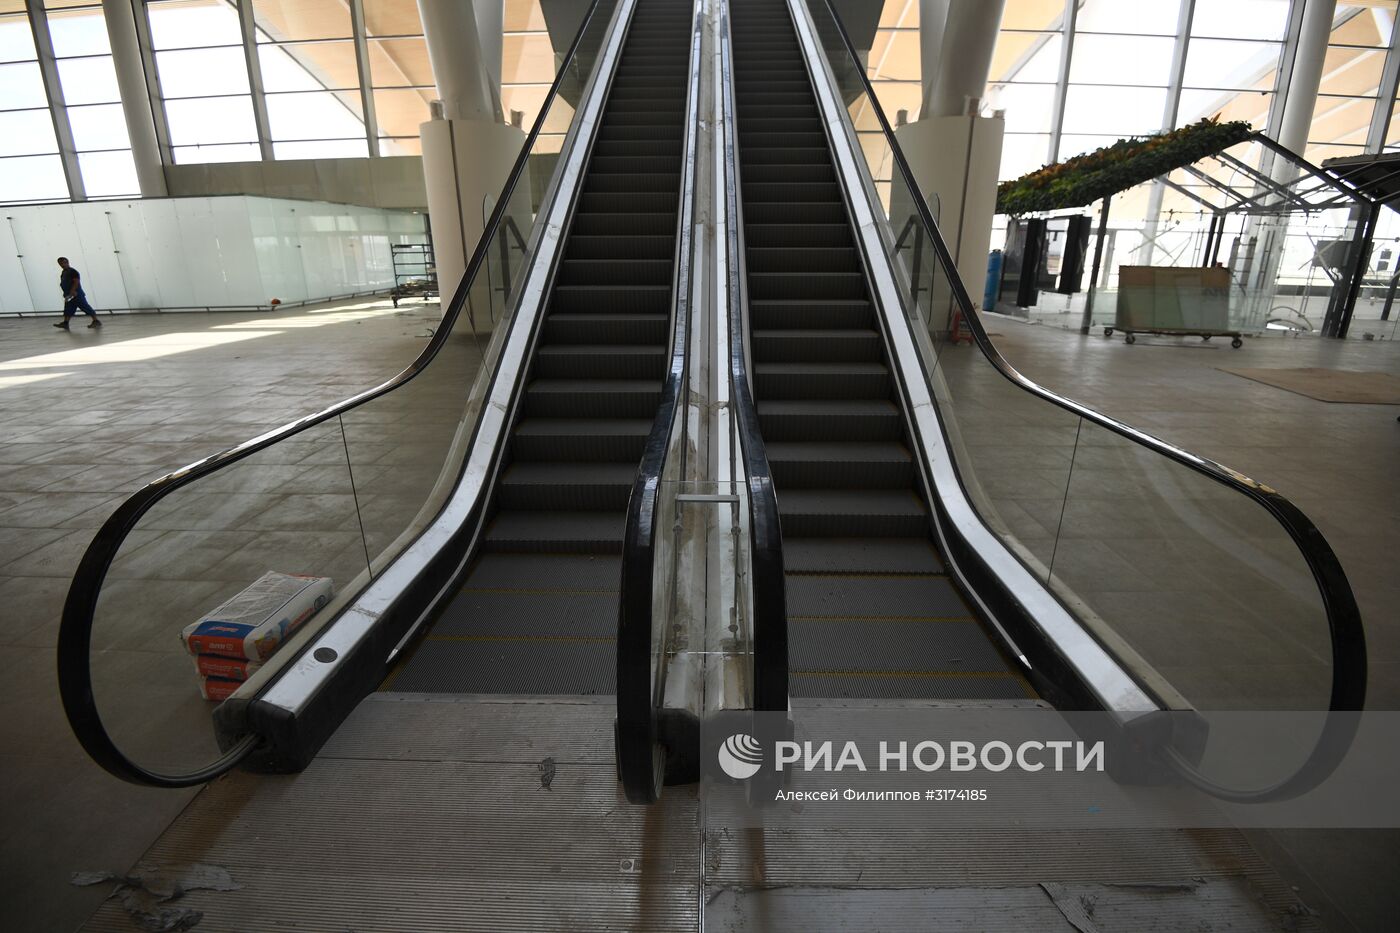 Строительство международного аэропорта "Платов" в Ростовской области